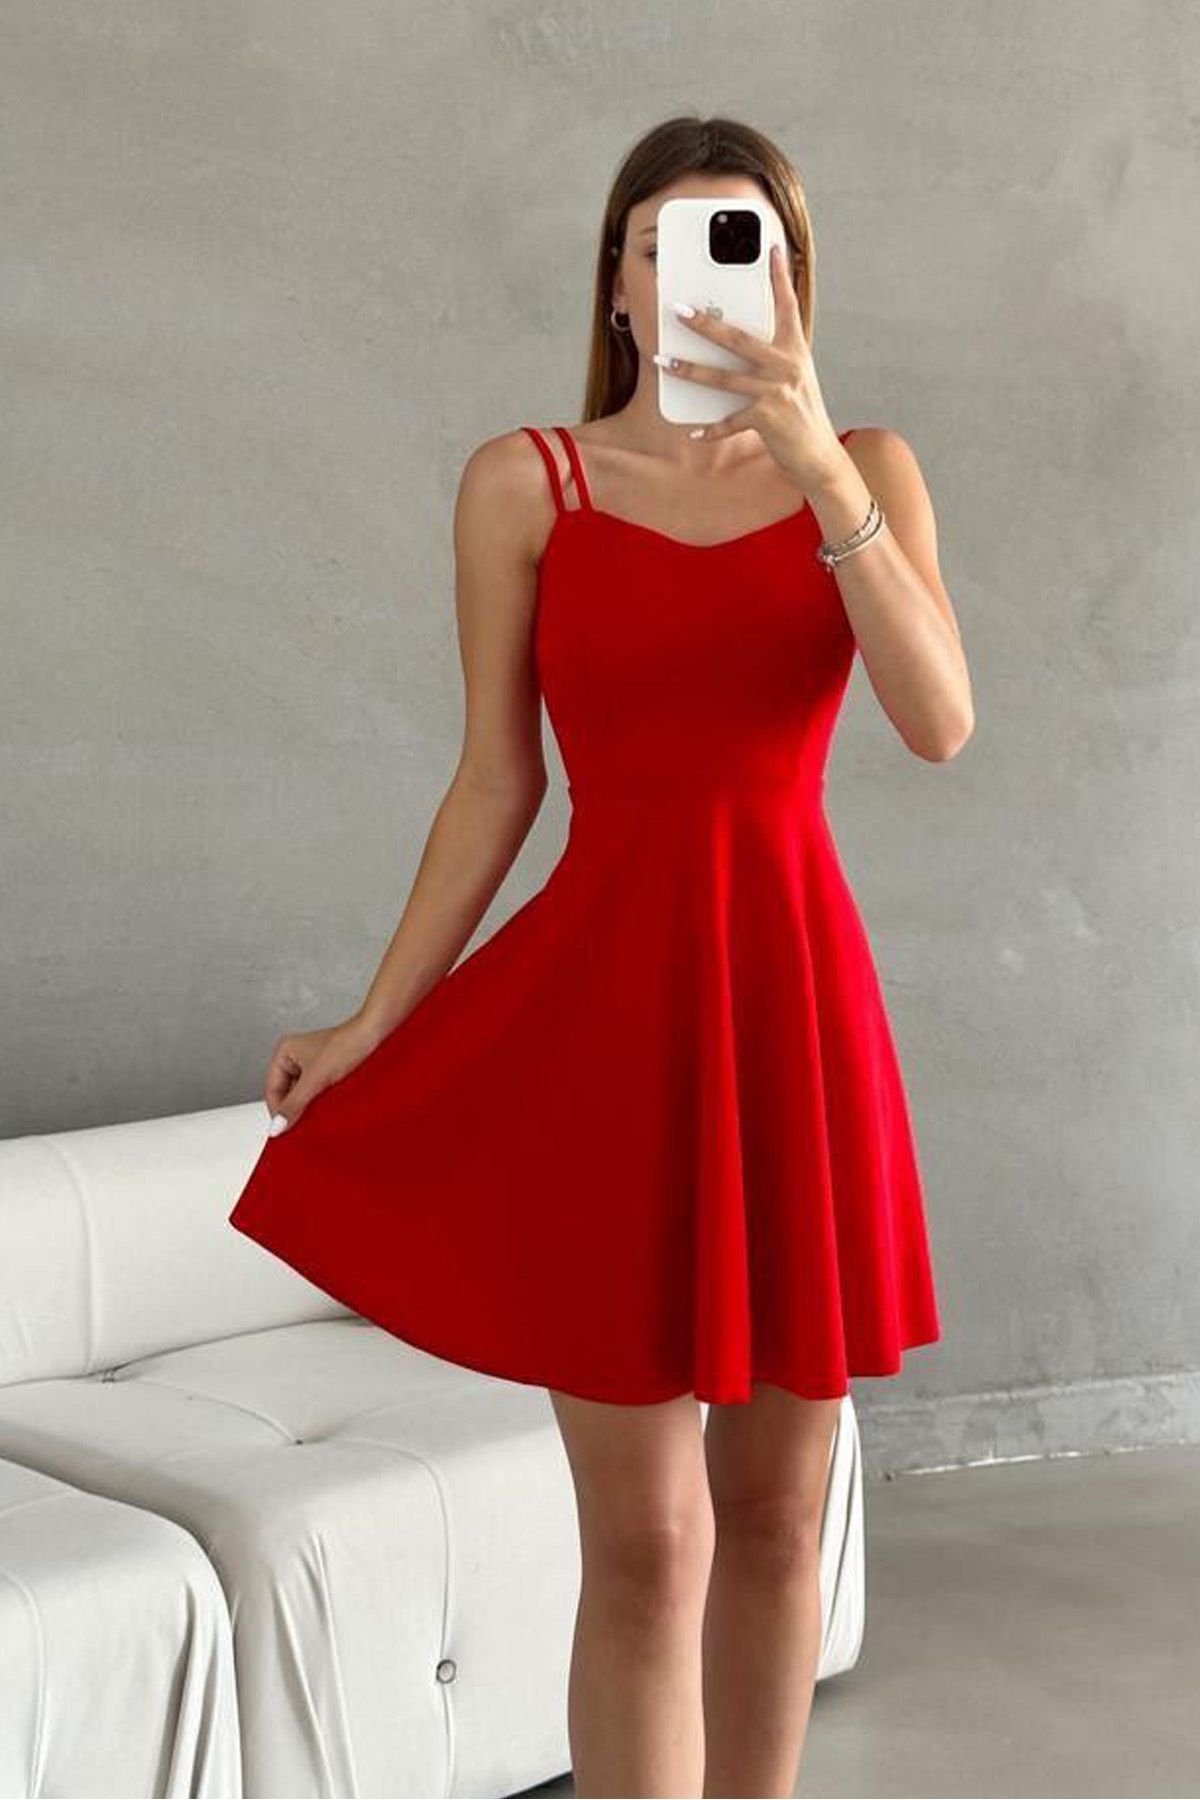 RURIS Kadın Kırmızı Çift Askılı Kalp Yaka  Scuba Krep Mini Abiye Mezuniyet Elbisesi